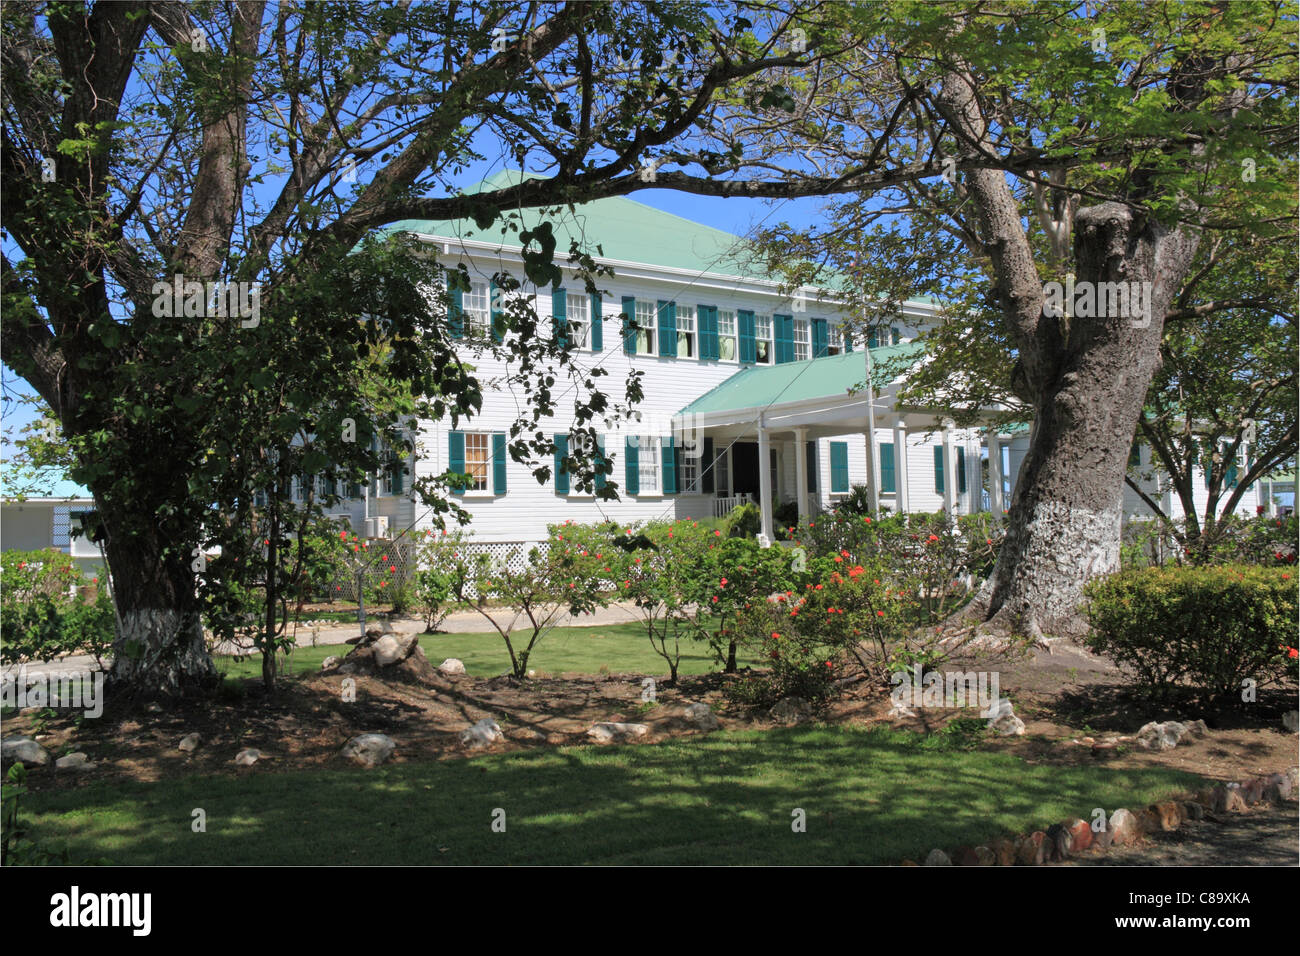 Maison de la Culture, anciennement Government House (résidence du Gouverneur britannique), Belize City, Belize, Caraïbes, Amérique Centrale Banque D'Images